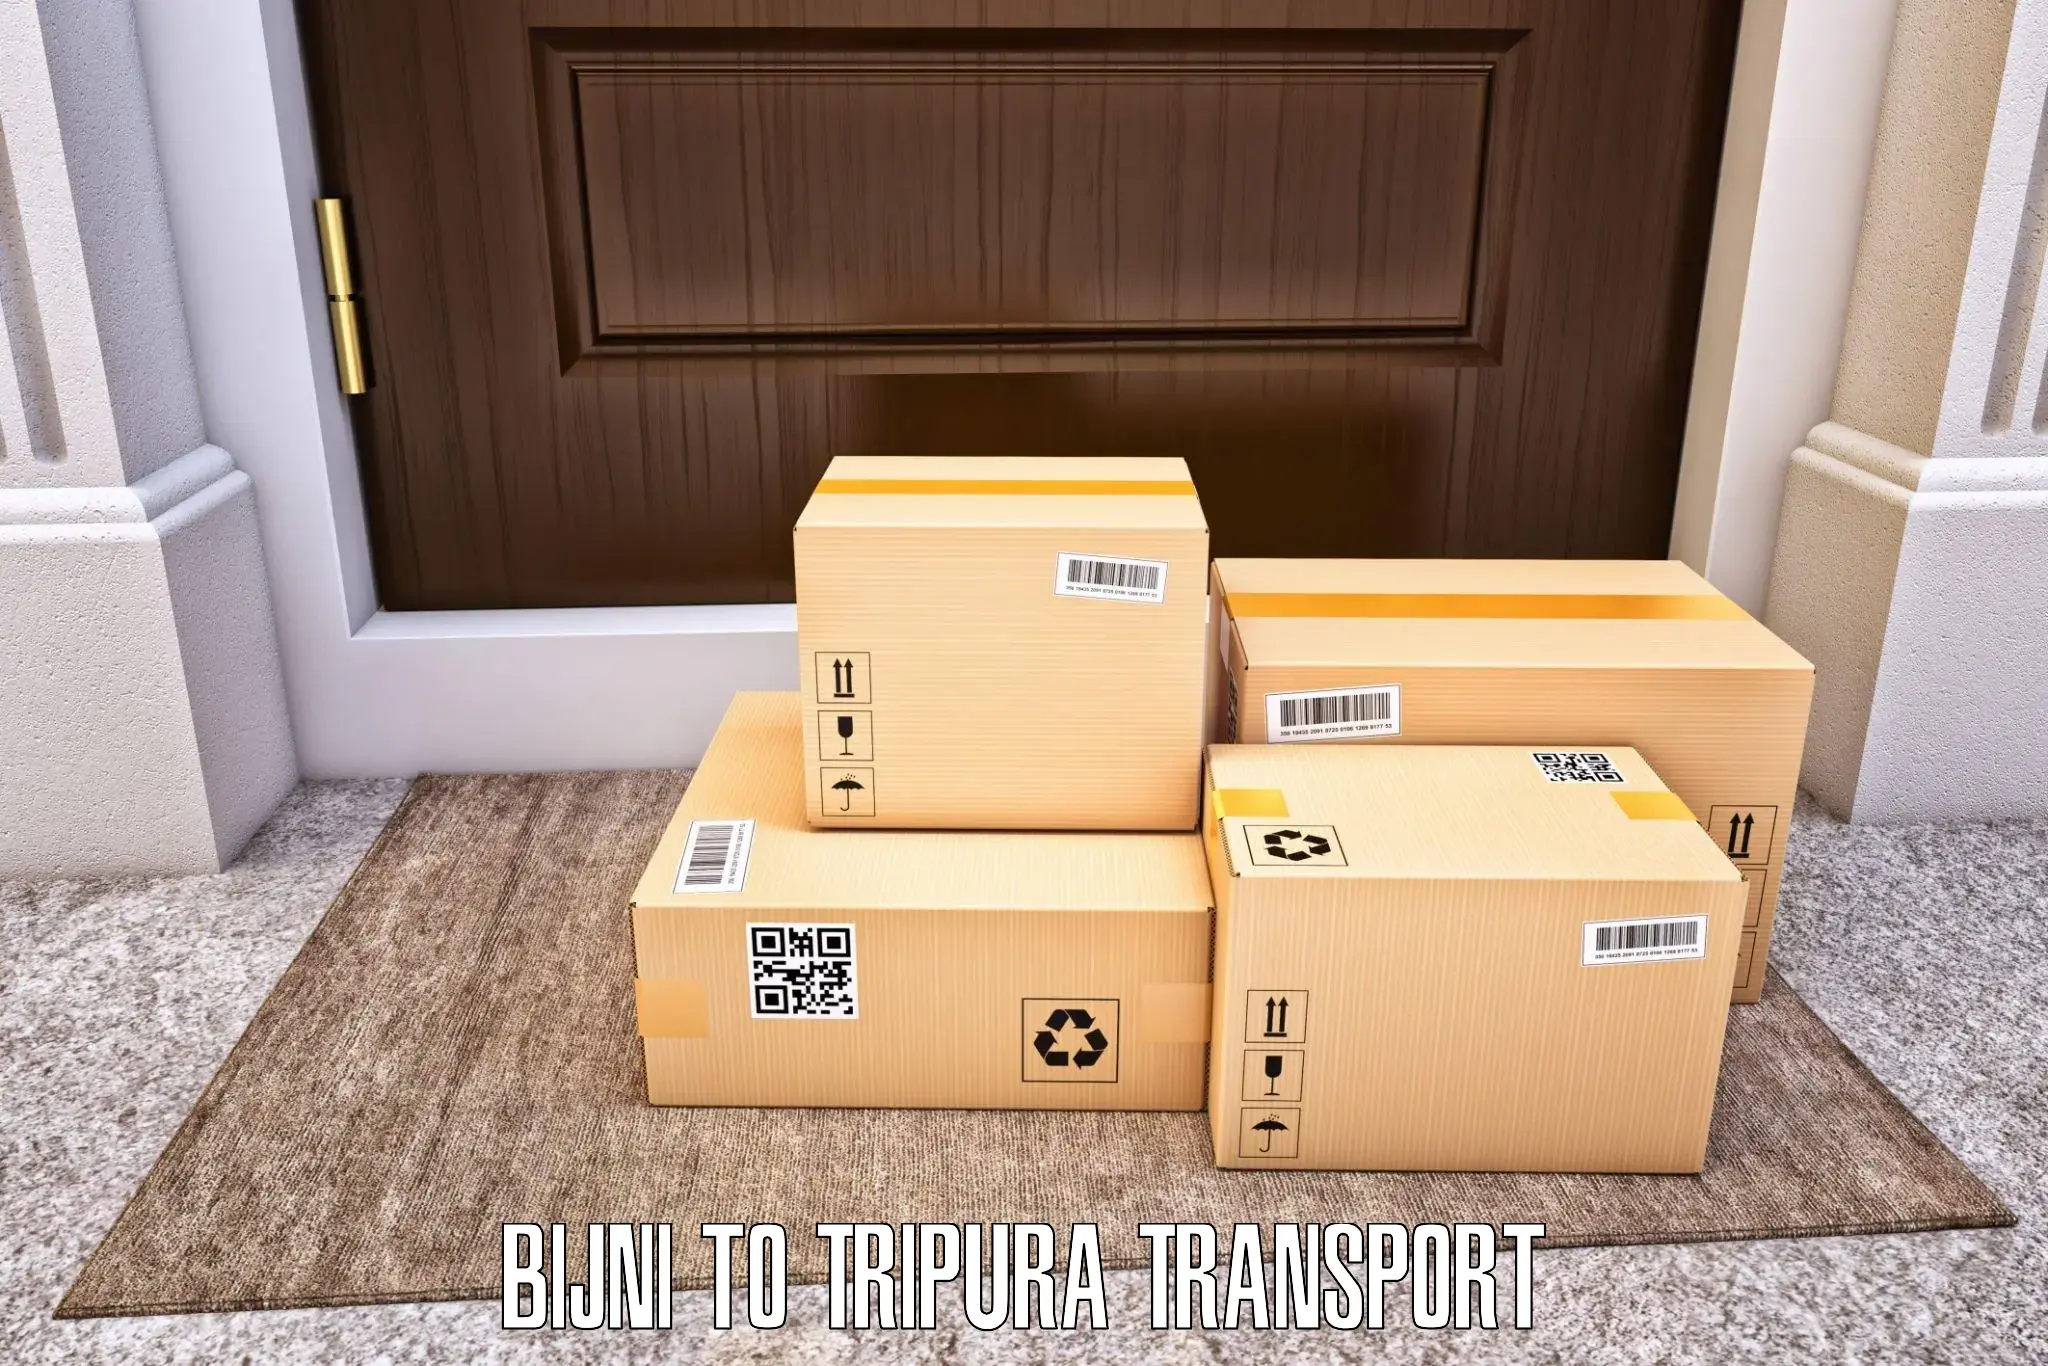 Container transport service Bijni to North Tripura